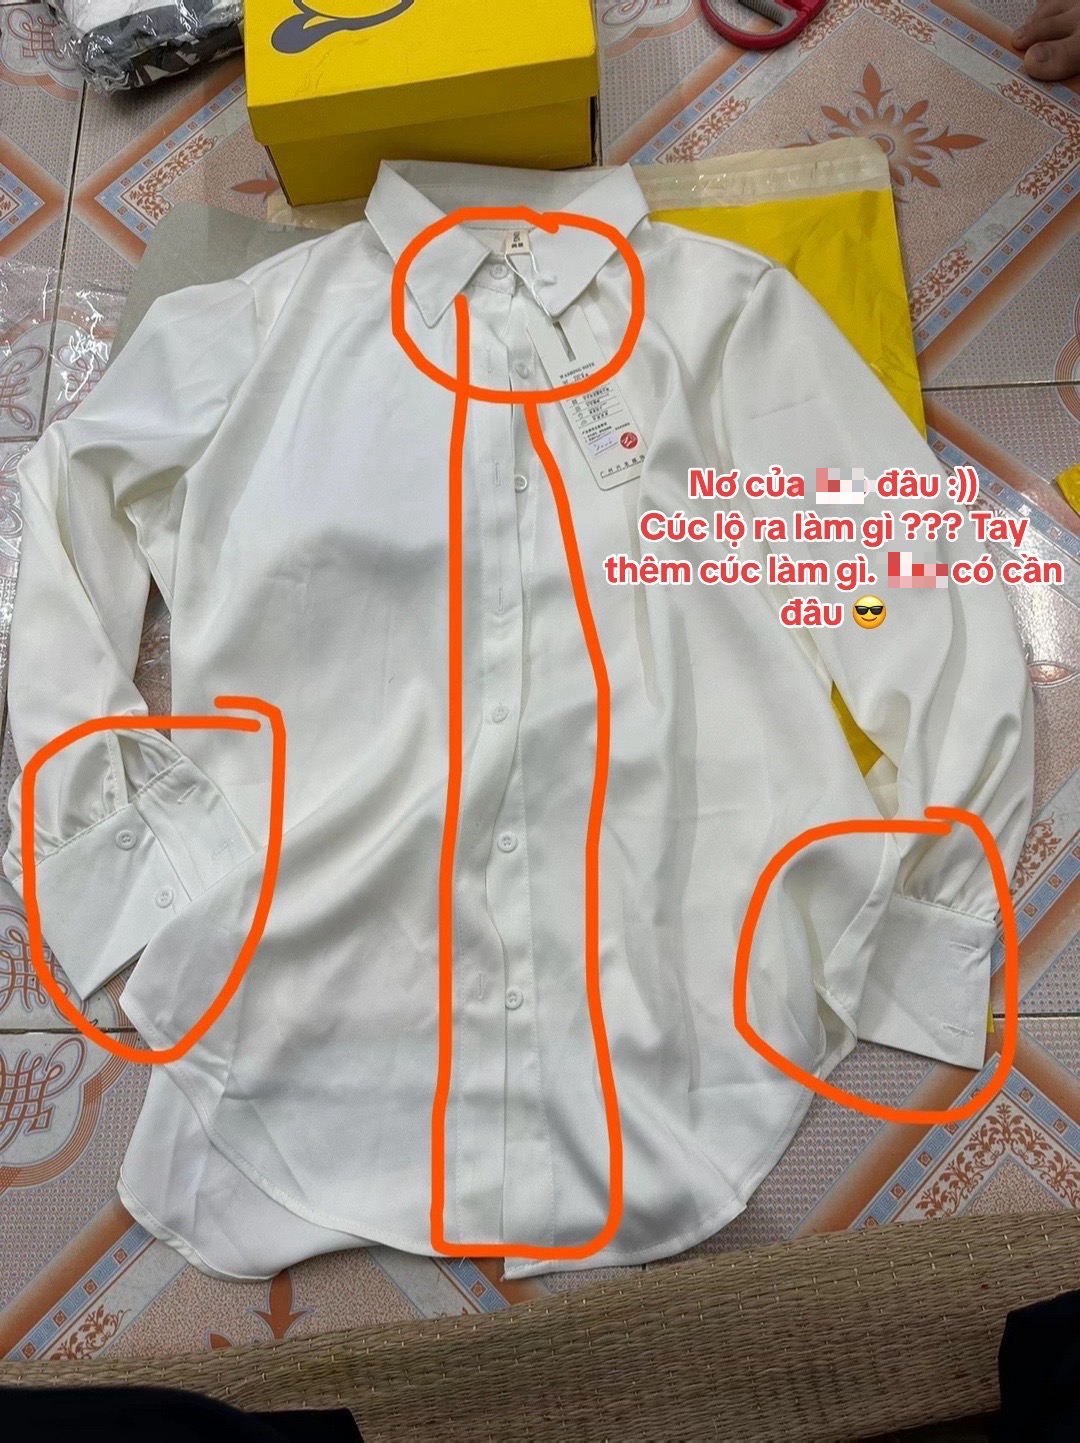 1001 chuyện cười ra nước mắt khi order quần áo trên Taobao: Hàng về tay 